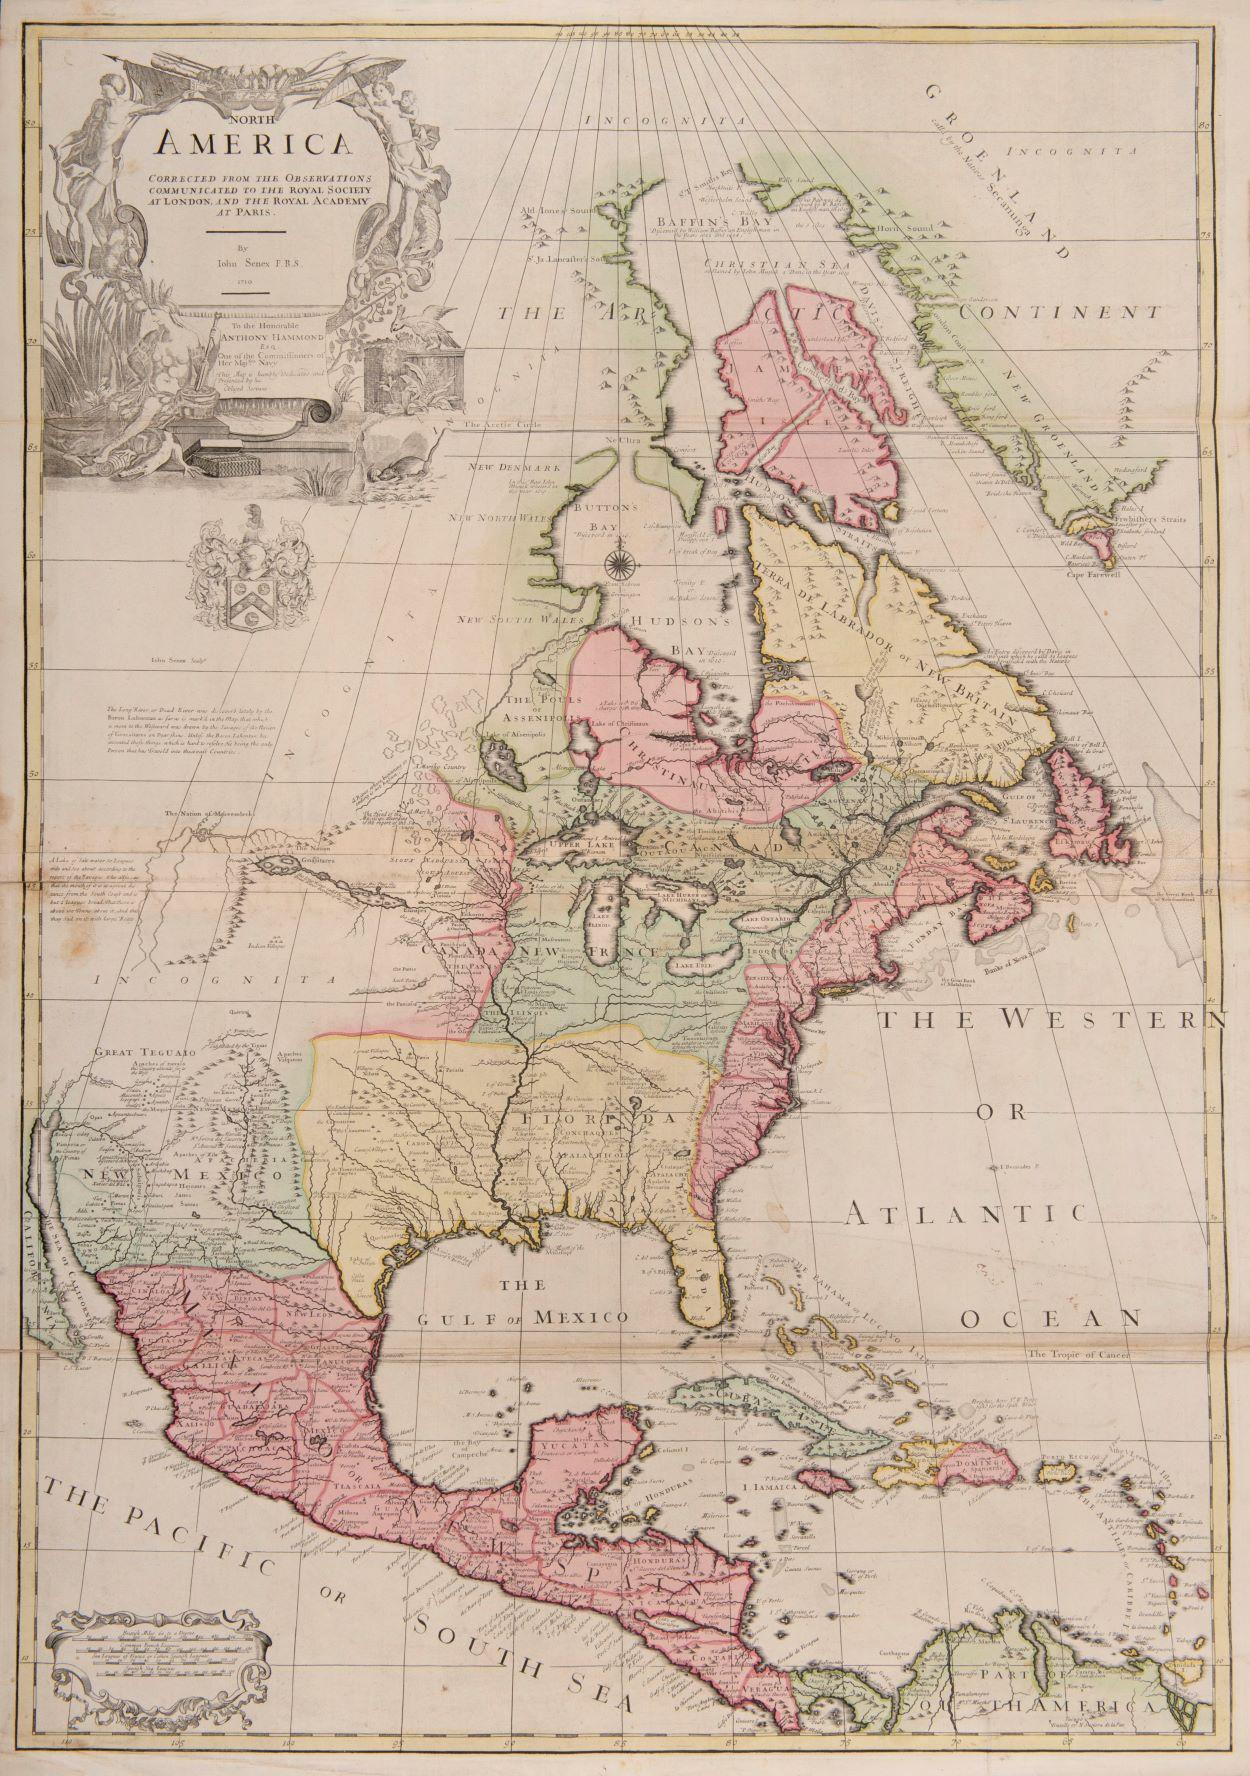 eine der frühesten großformatigen englischen Karten von Nordamerika – Art von John Senex